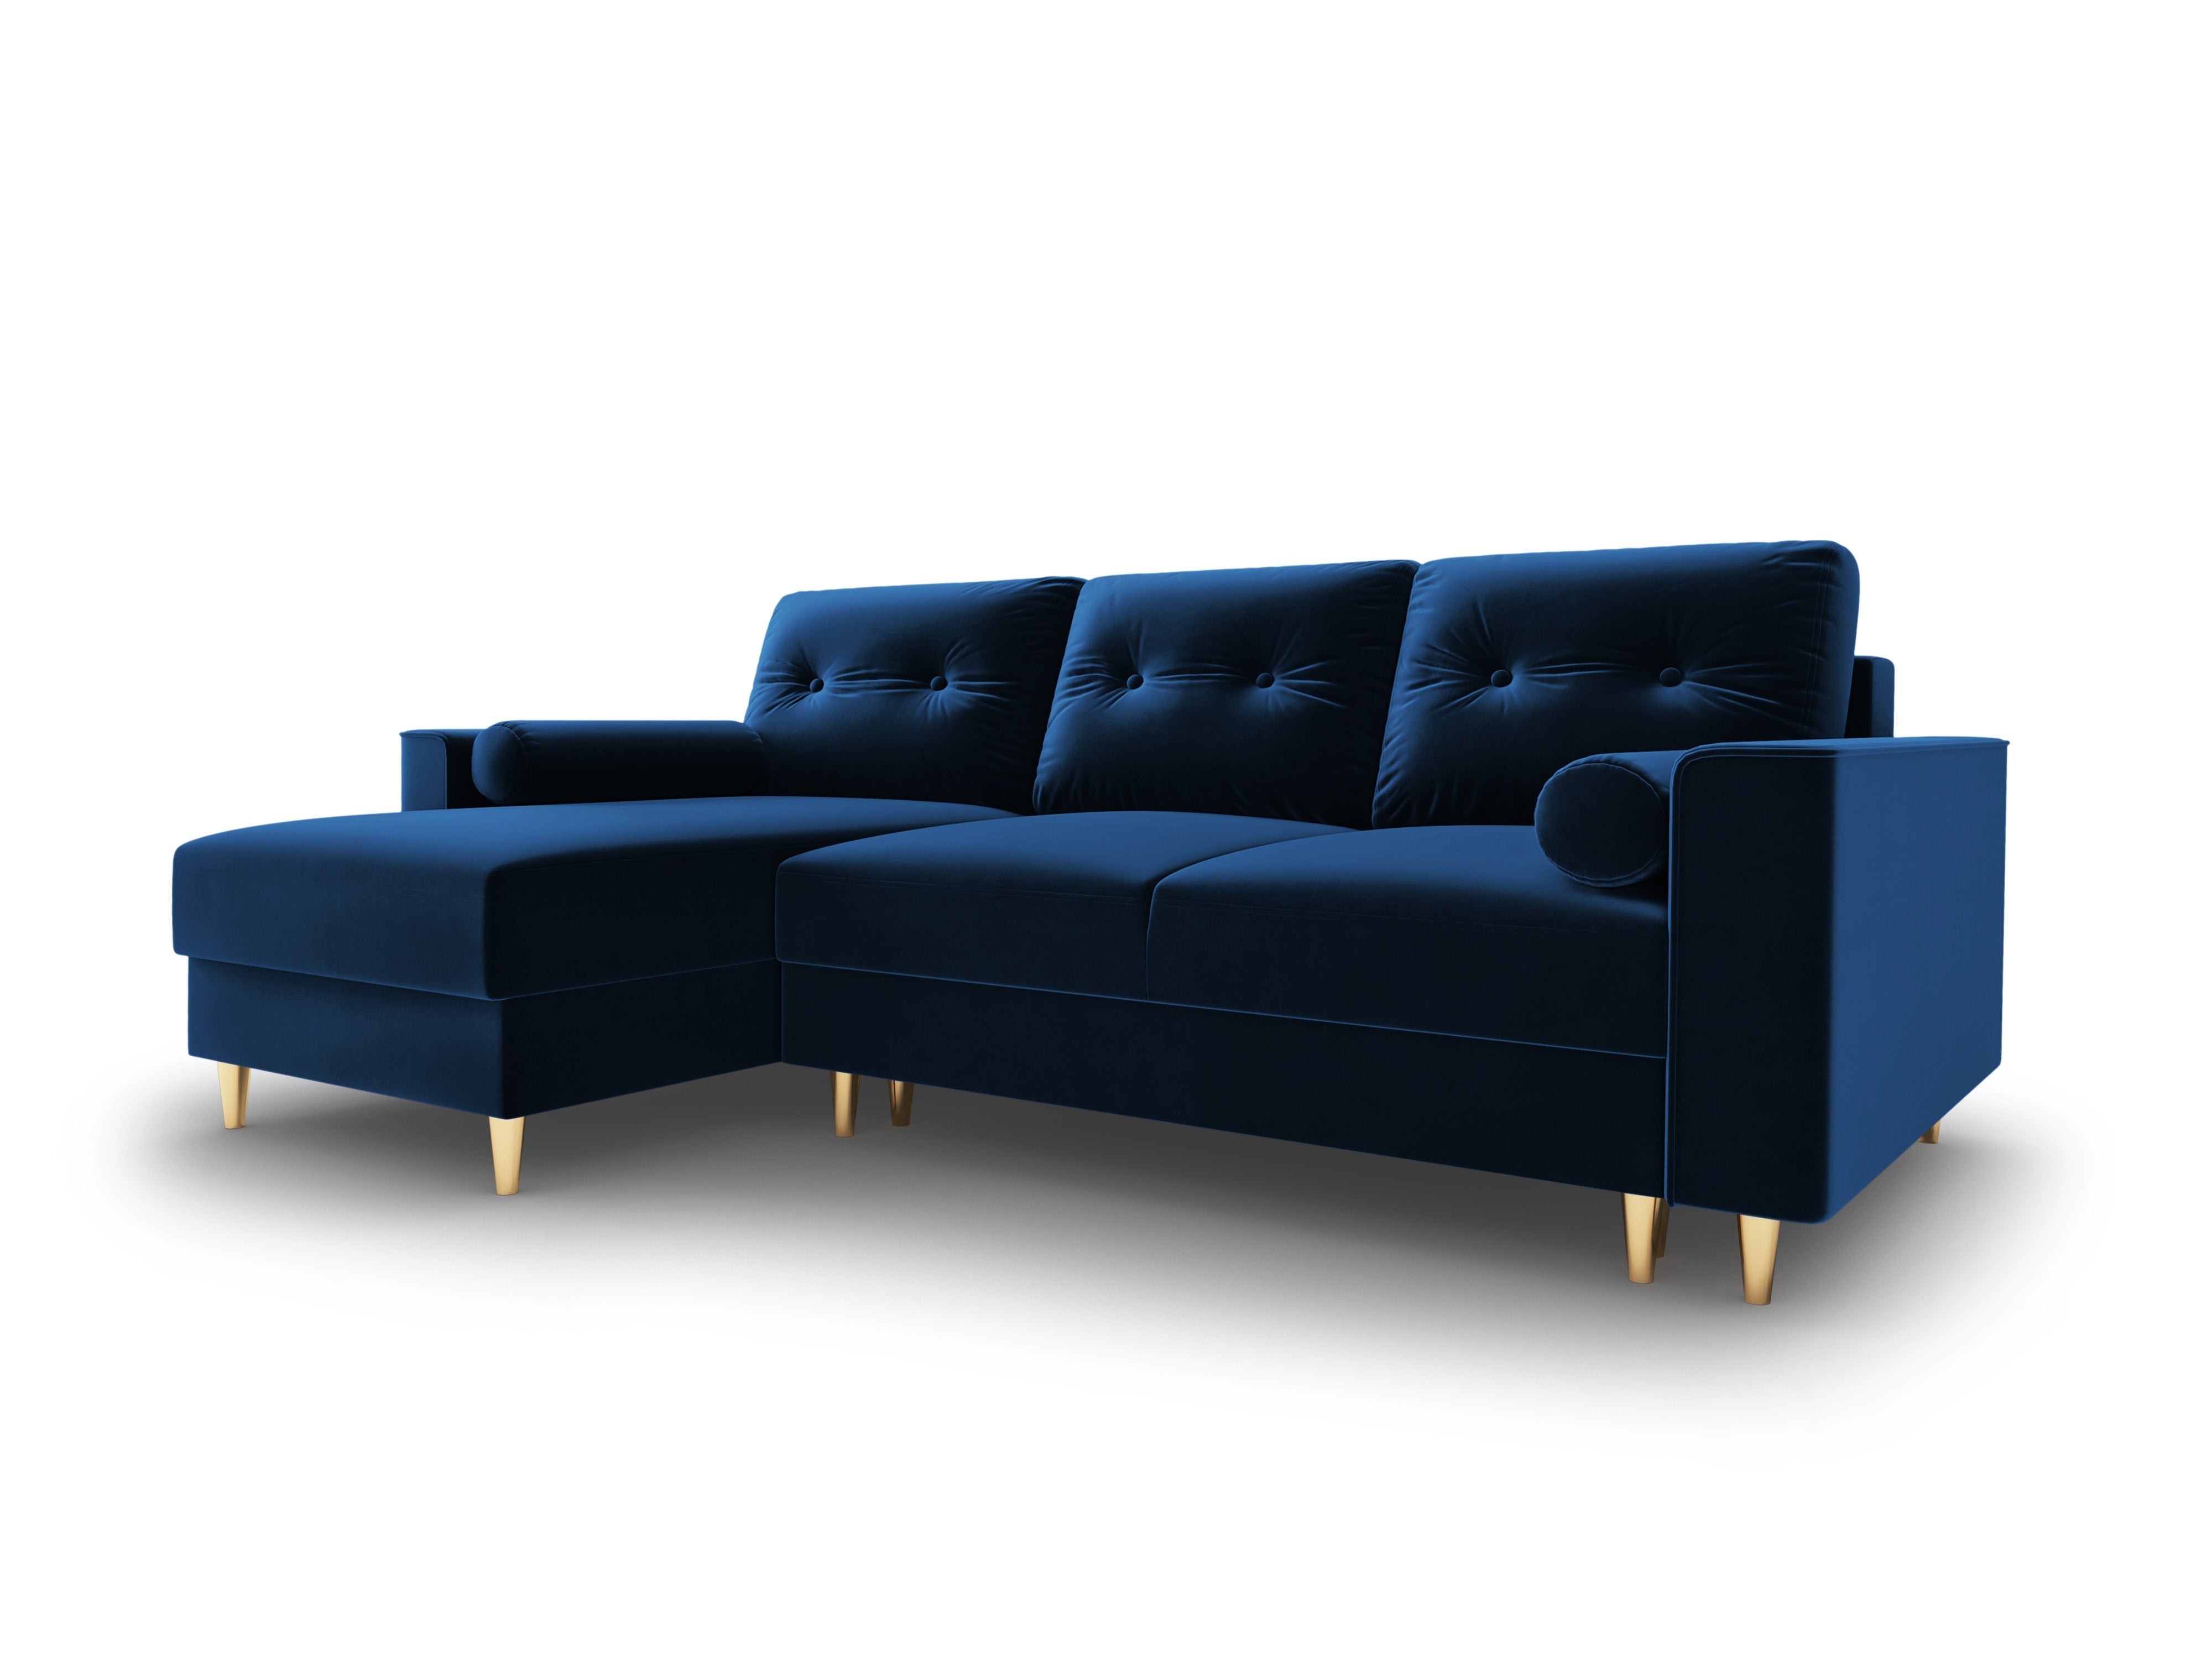 Blue modular corner with armrests